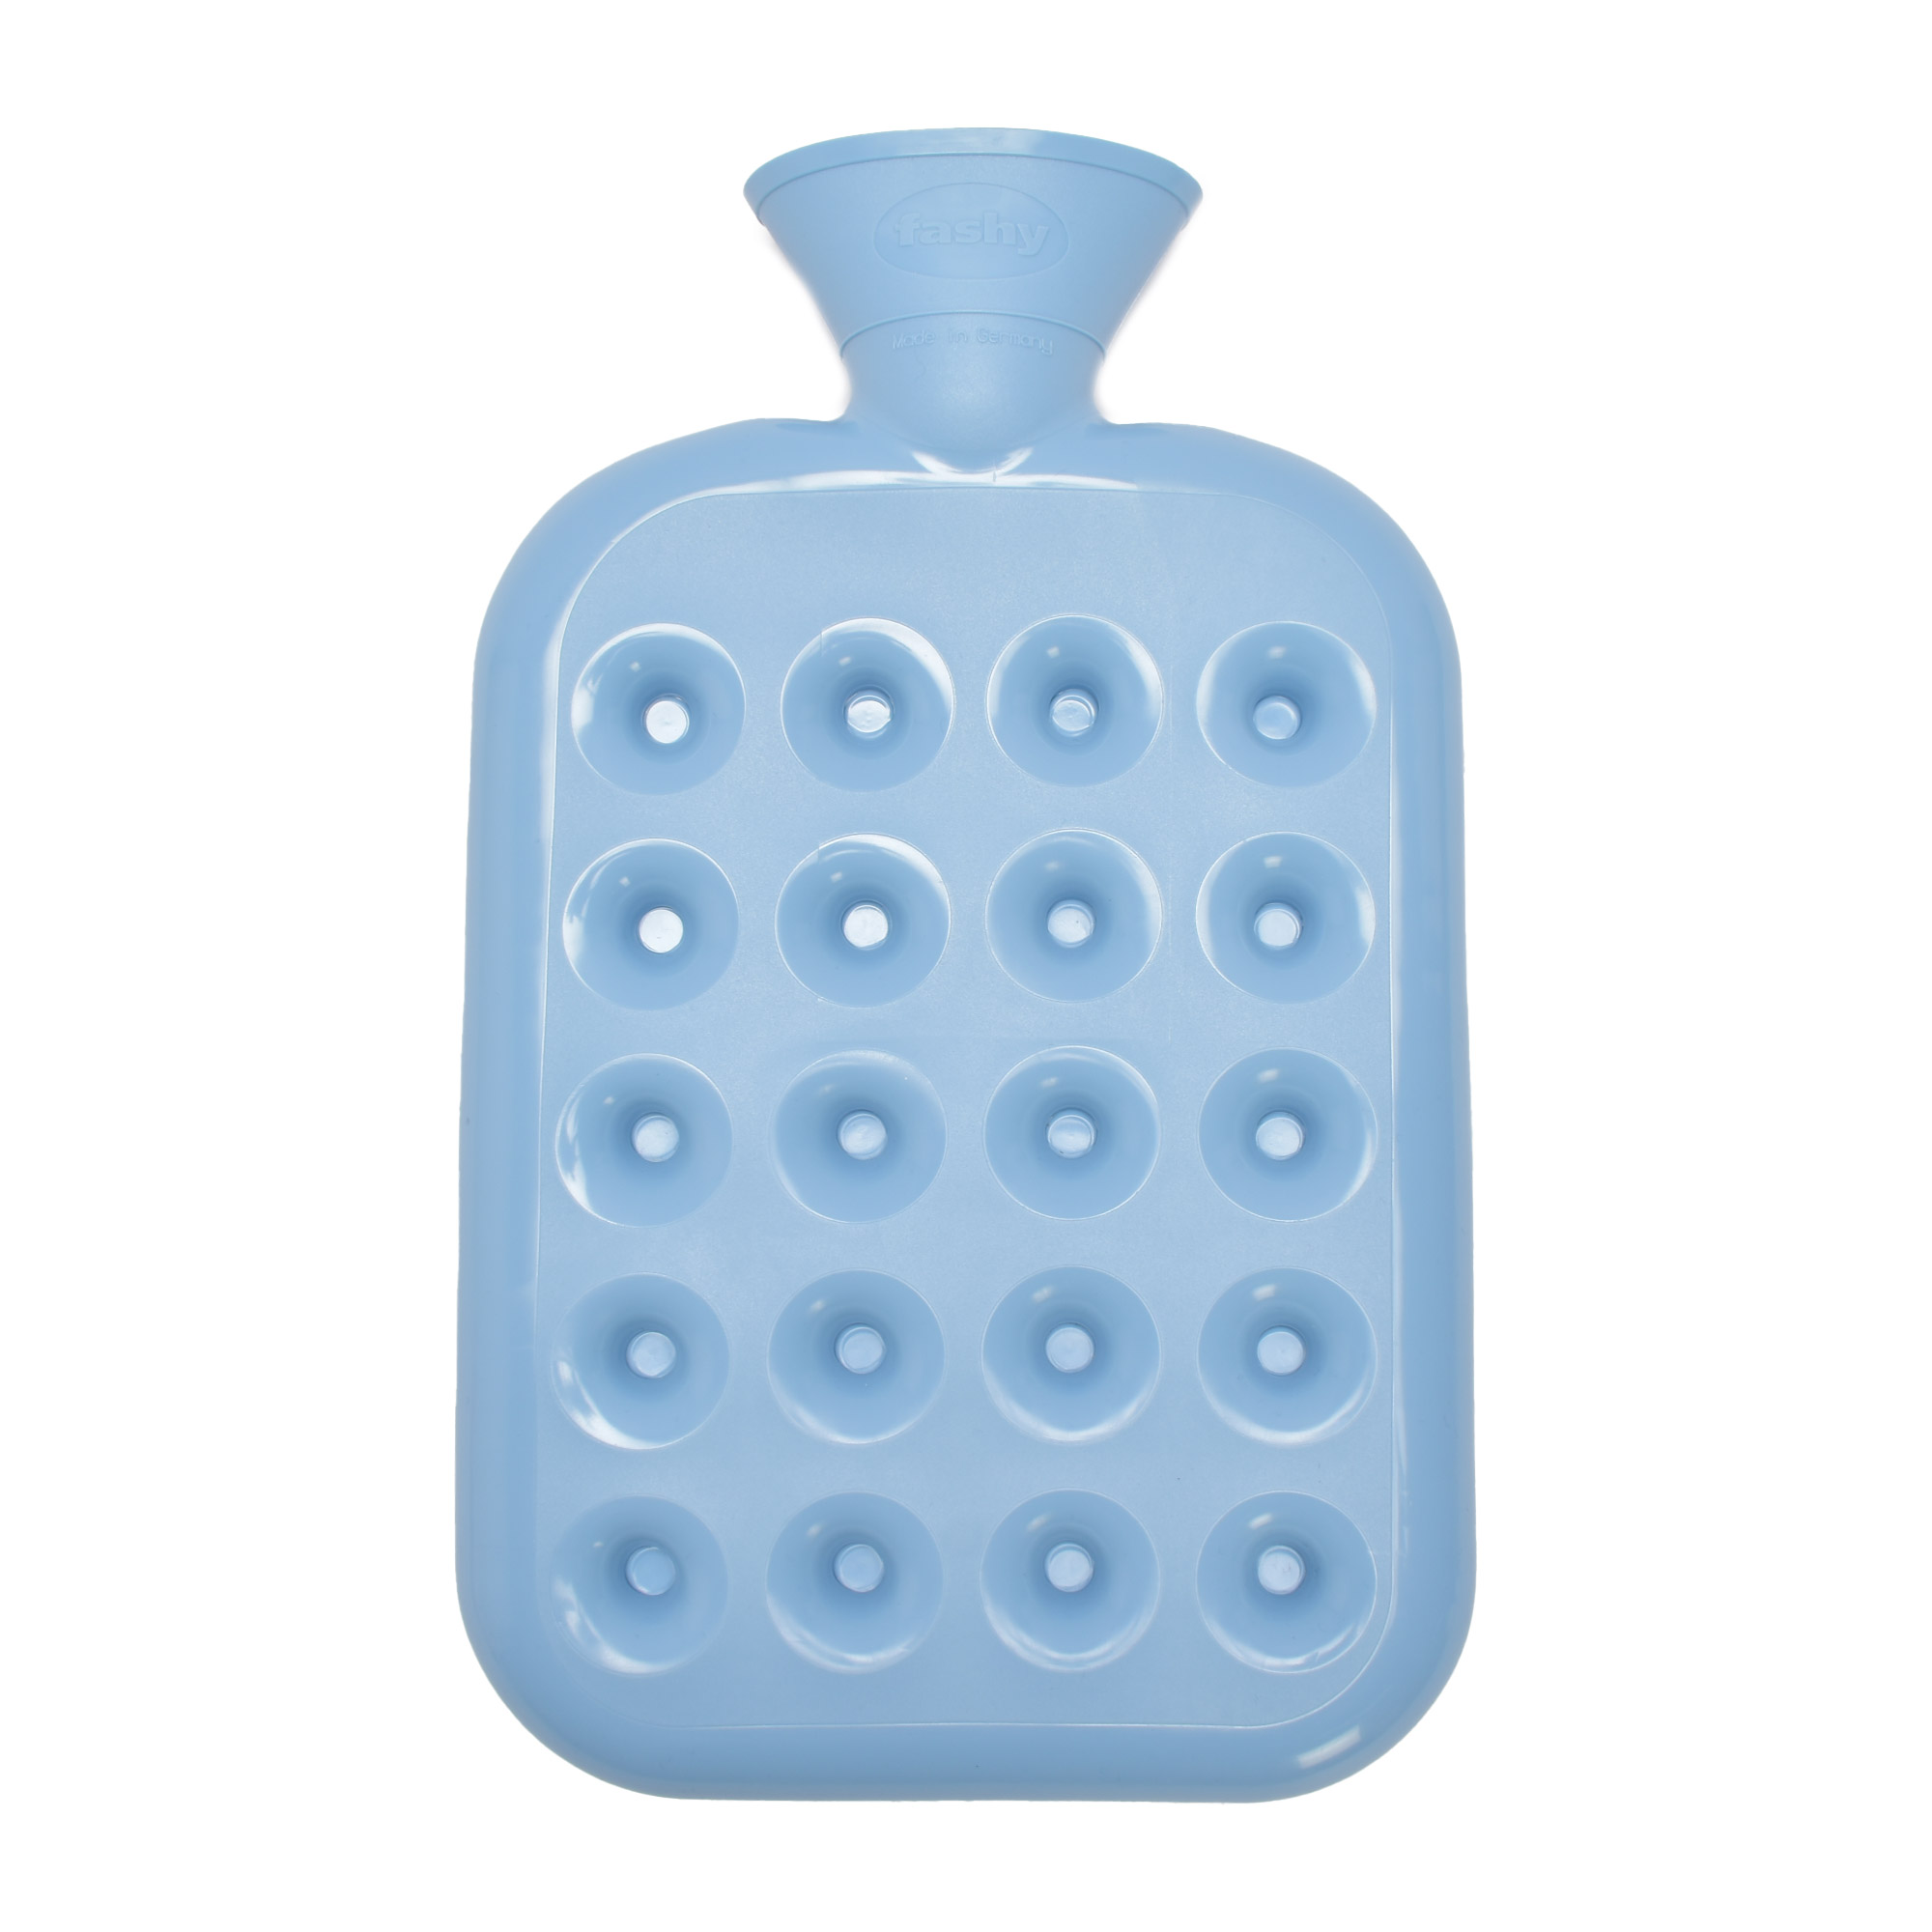 ファシー 湯たんぽ FASHY HWB 6424 1.2L かわいい ピンク ブルー 青 スタンダードボトル ウォーターボトル 水枕 プレゼント  ギフト キッズ ベビー 半透明